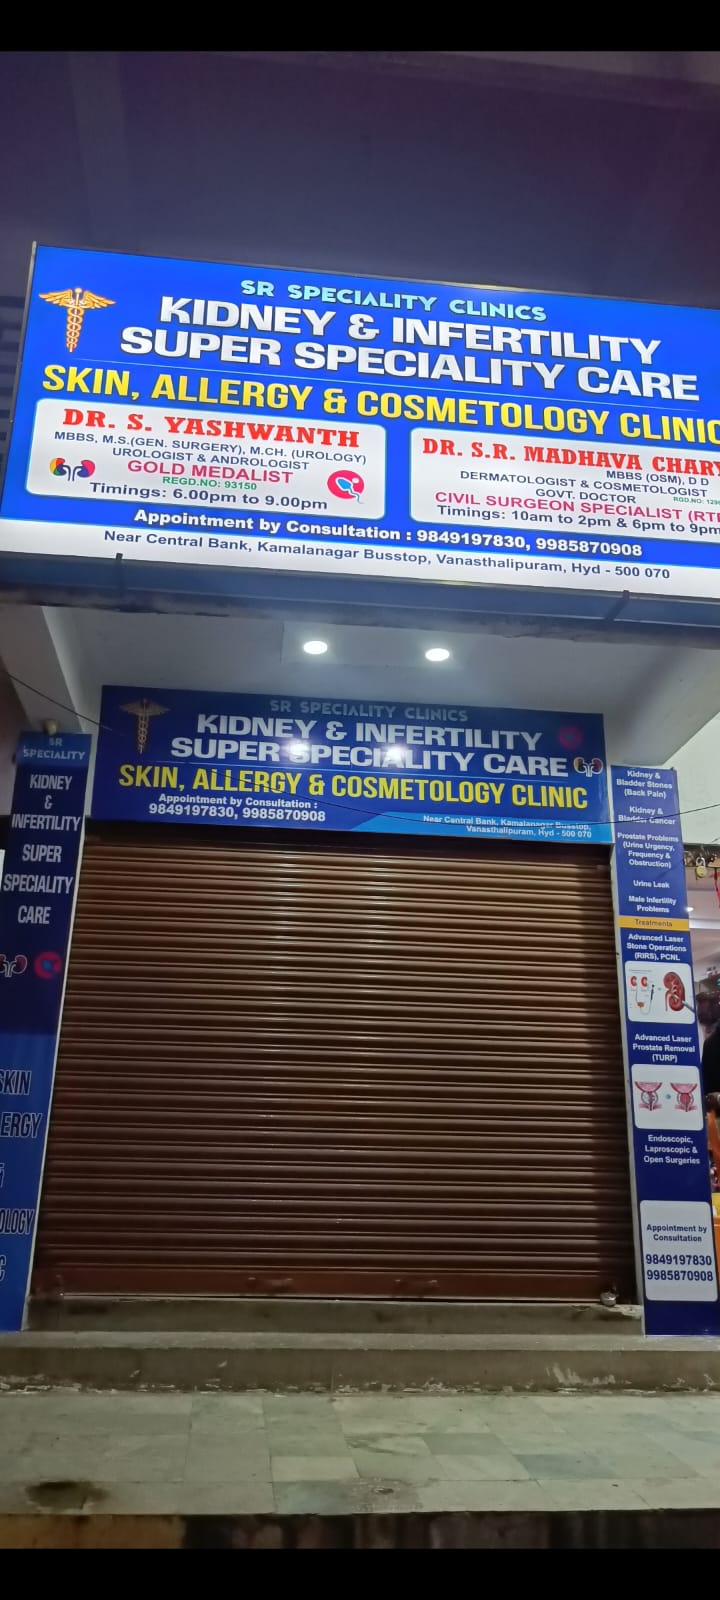 SR Speciality Clinics - Vanasthalipuram, Hyderabad